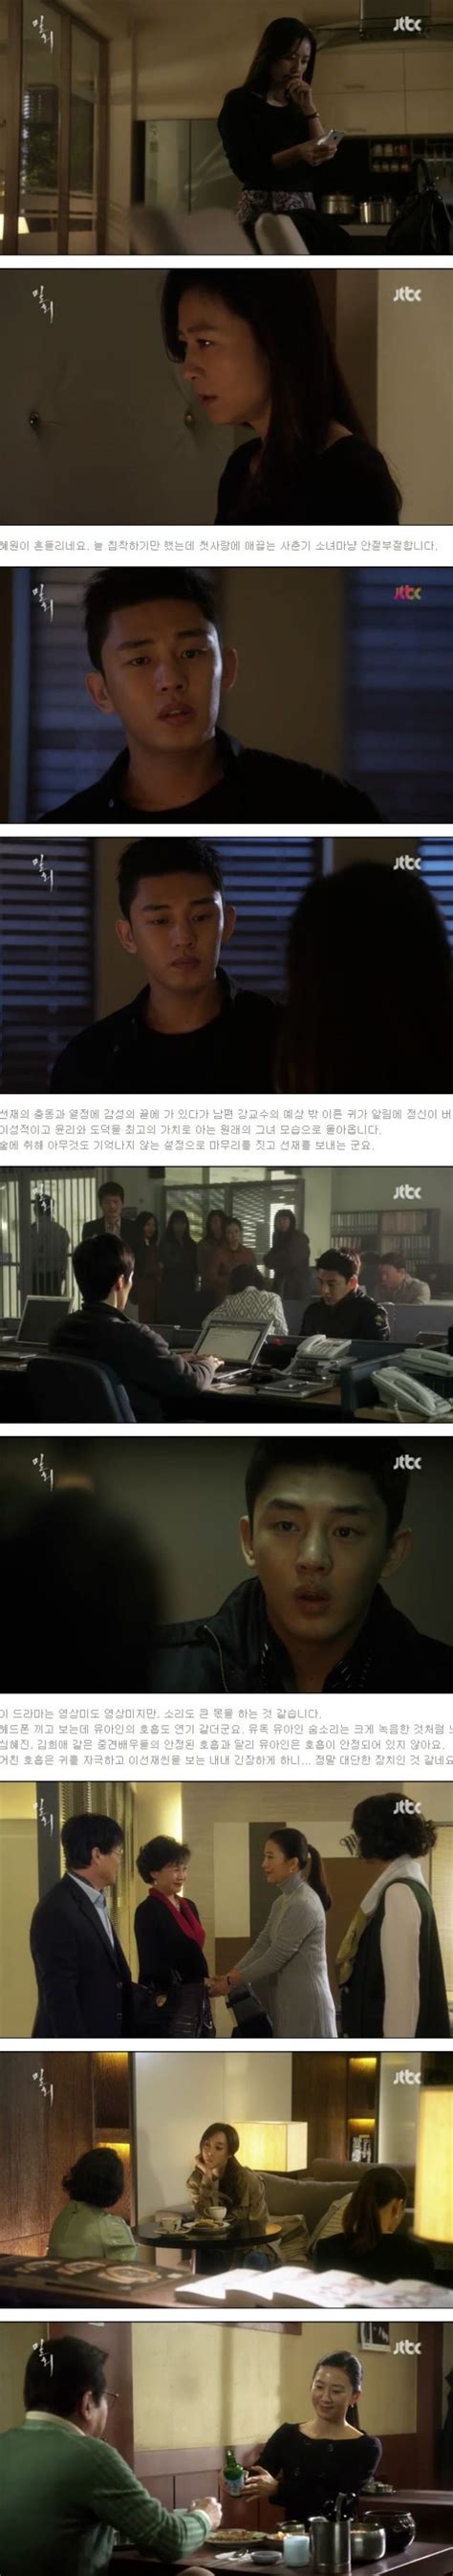 [spoiler] Added Episode 4 Captures For The Korean Drama Secret Love Affair Hancinema